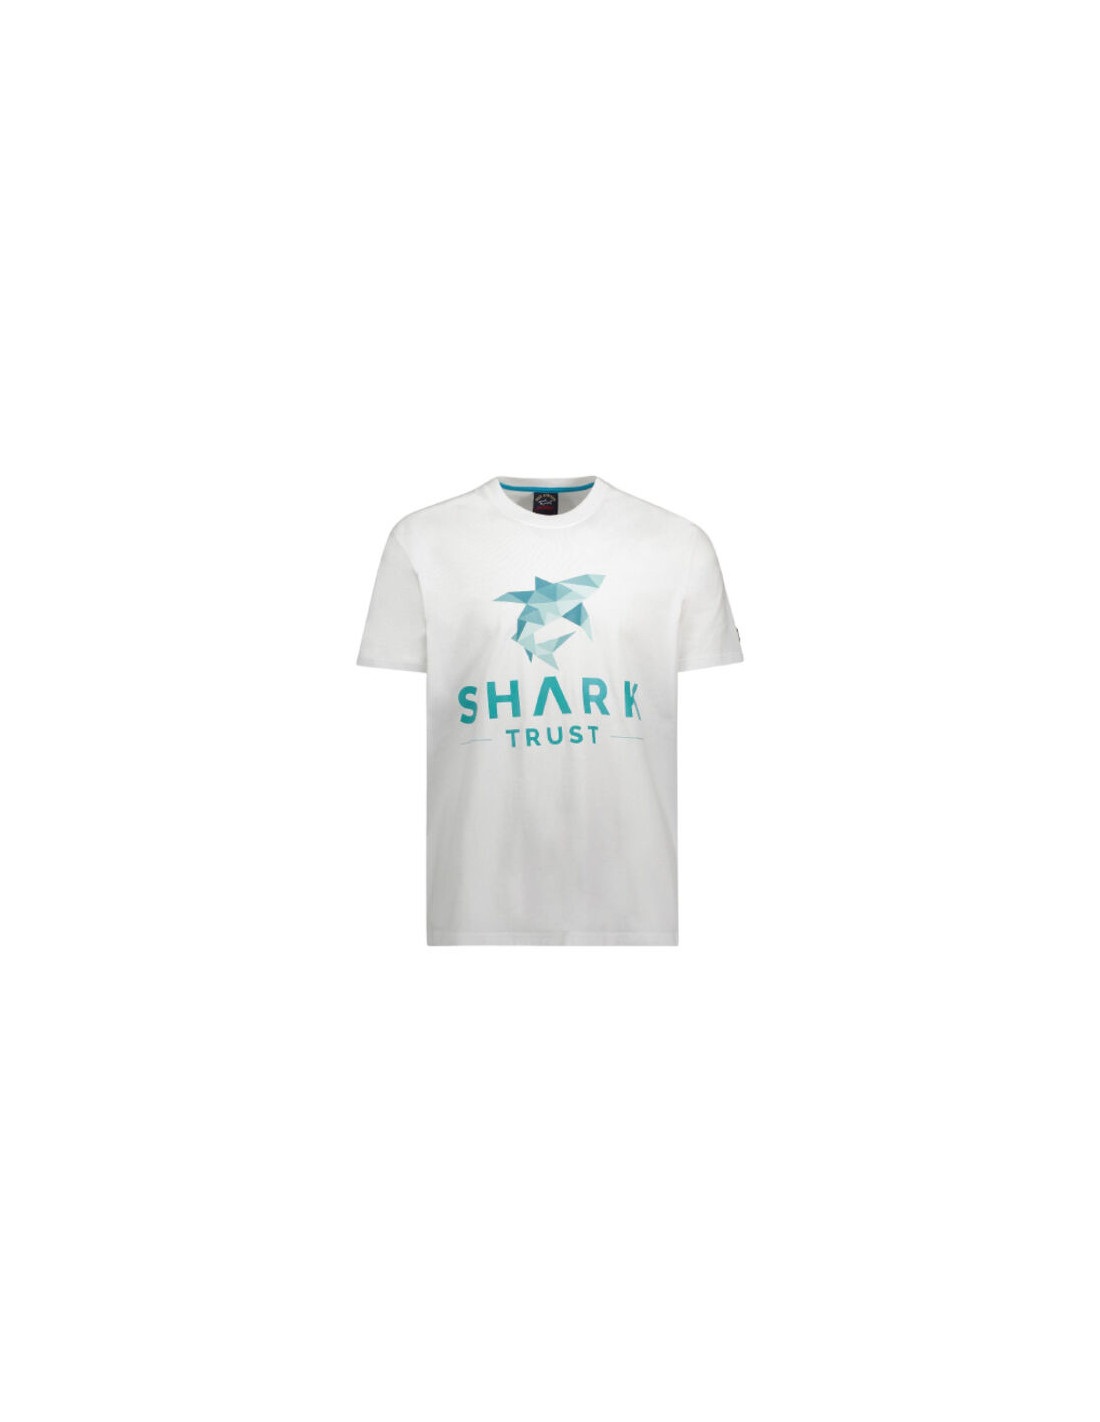 SHARK TRUST ORGANIC COTTON T-SHIRT